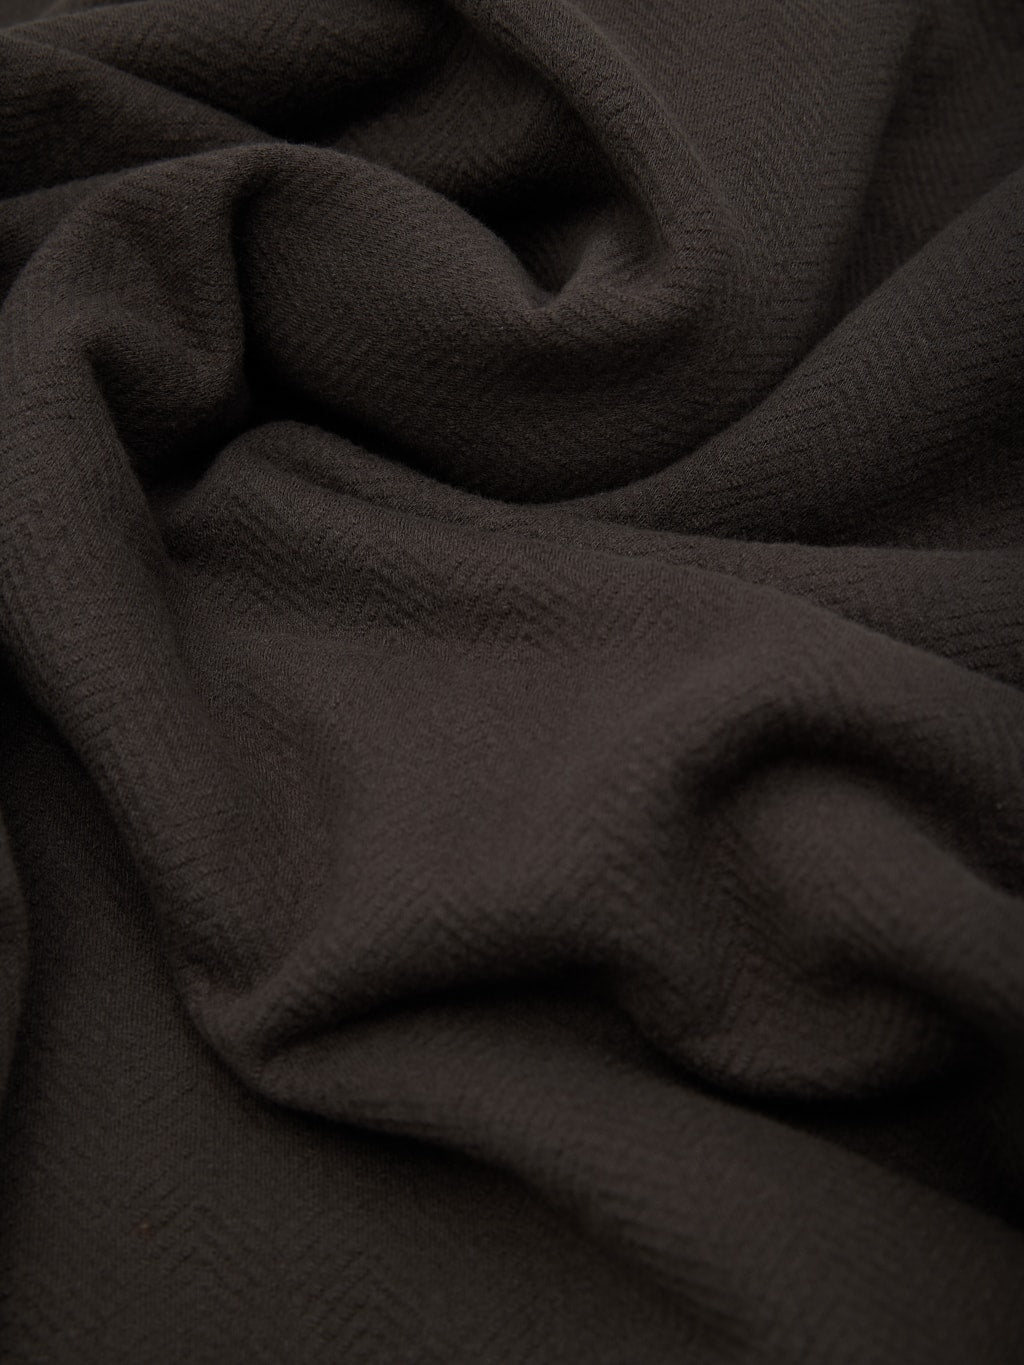 Loop Weft Herringbone Pile Shawl Collar Cardigan Antique Black 100 cotton fabric